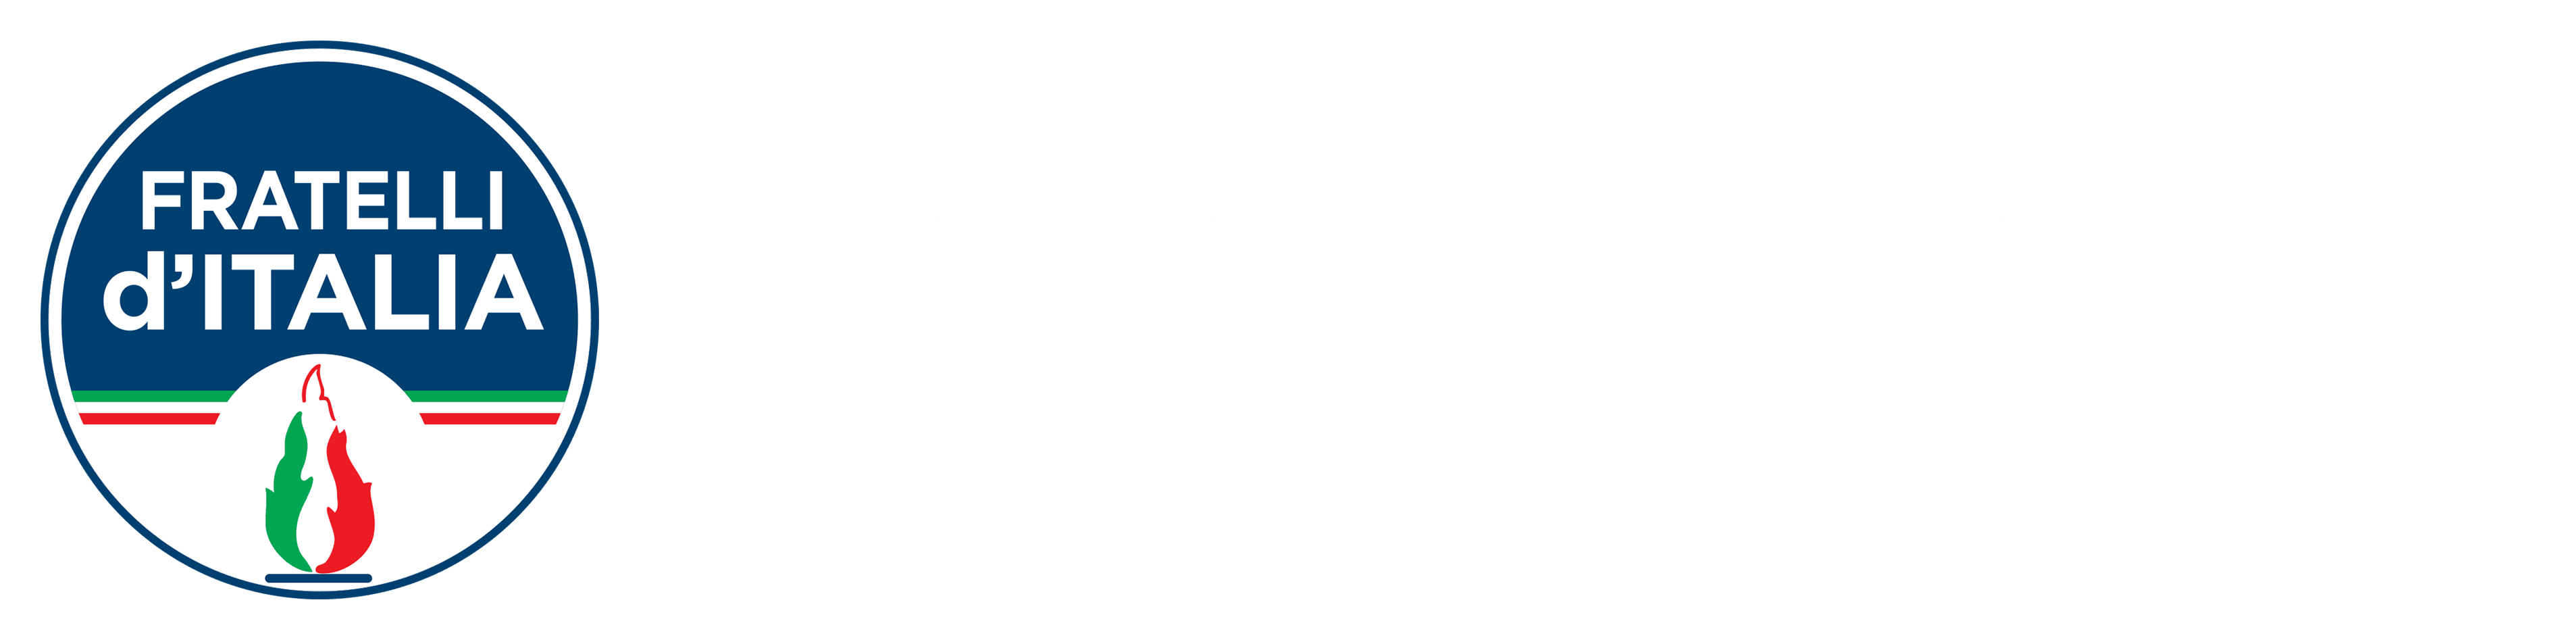 Maria Teresa Bellucci